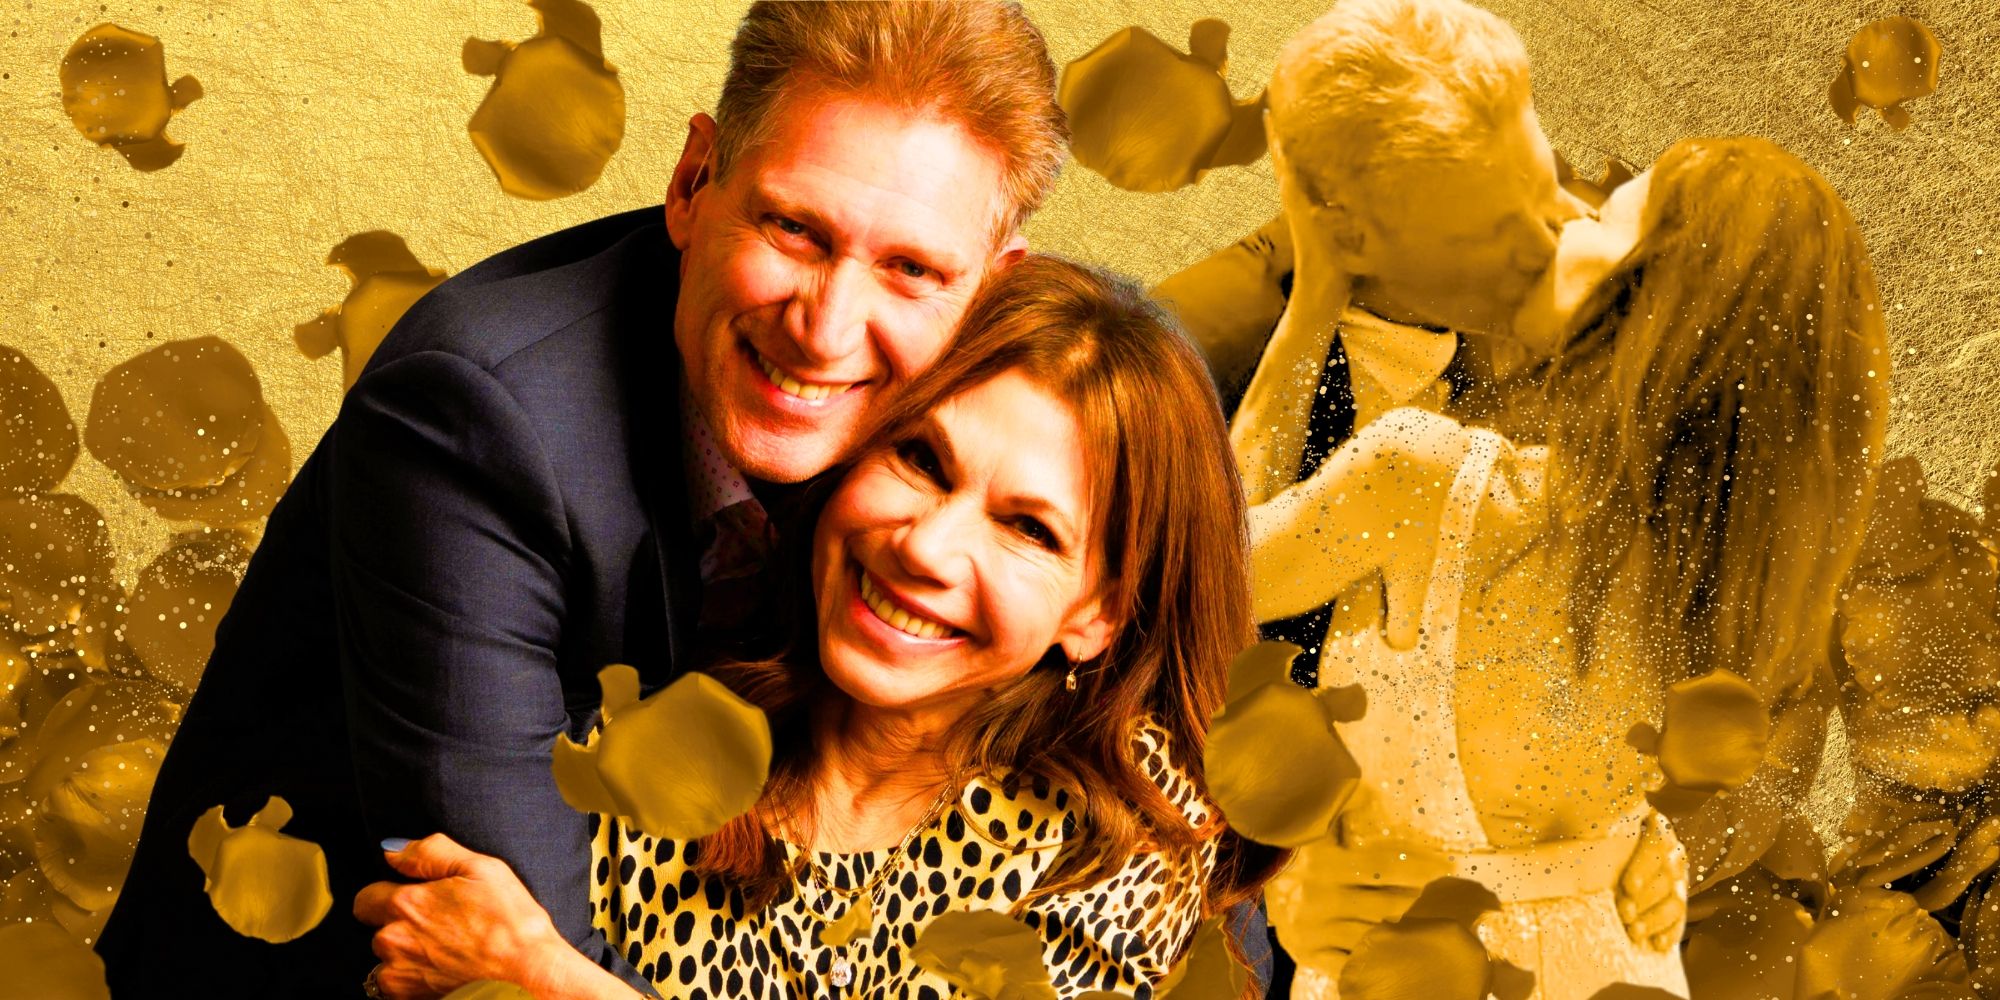 Gerry y Theresa de Golden Bachelor compiten contra estas estrellas solteras en una disputa familiar de celebridades